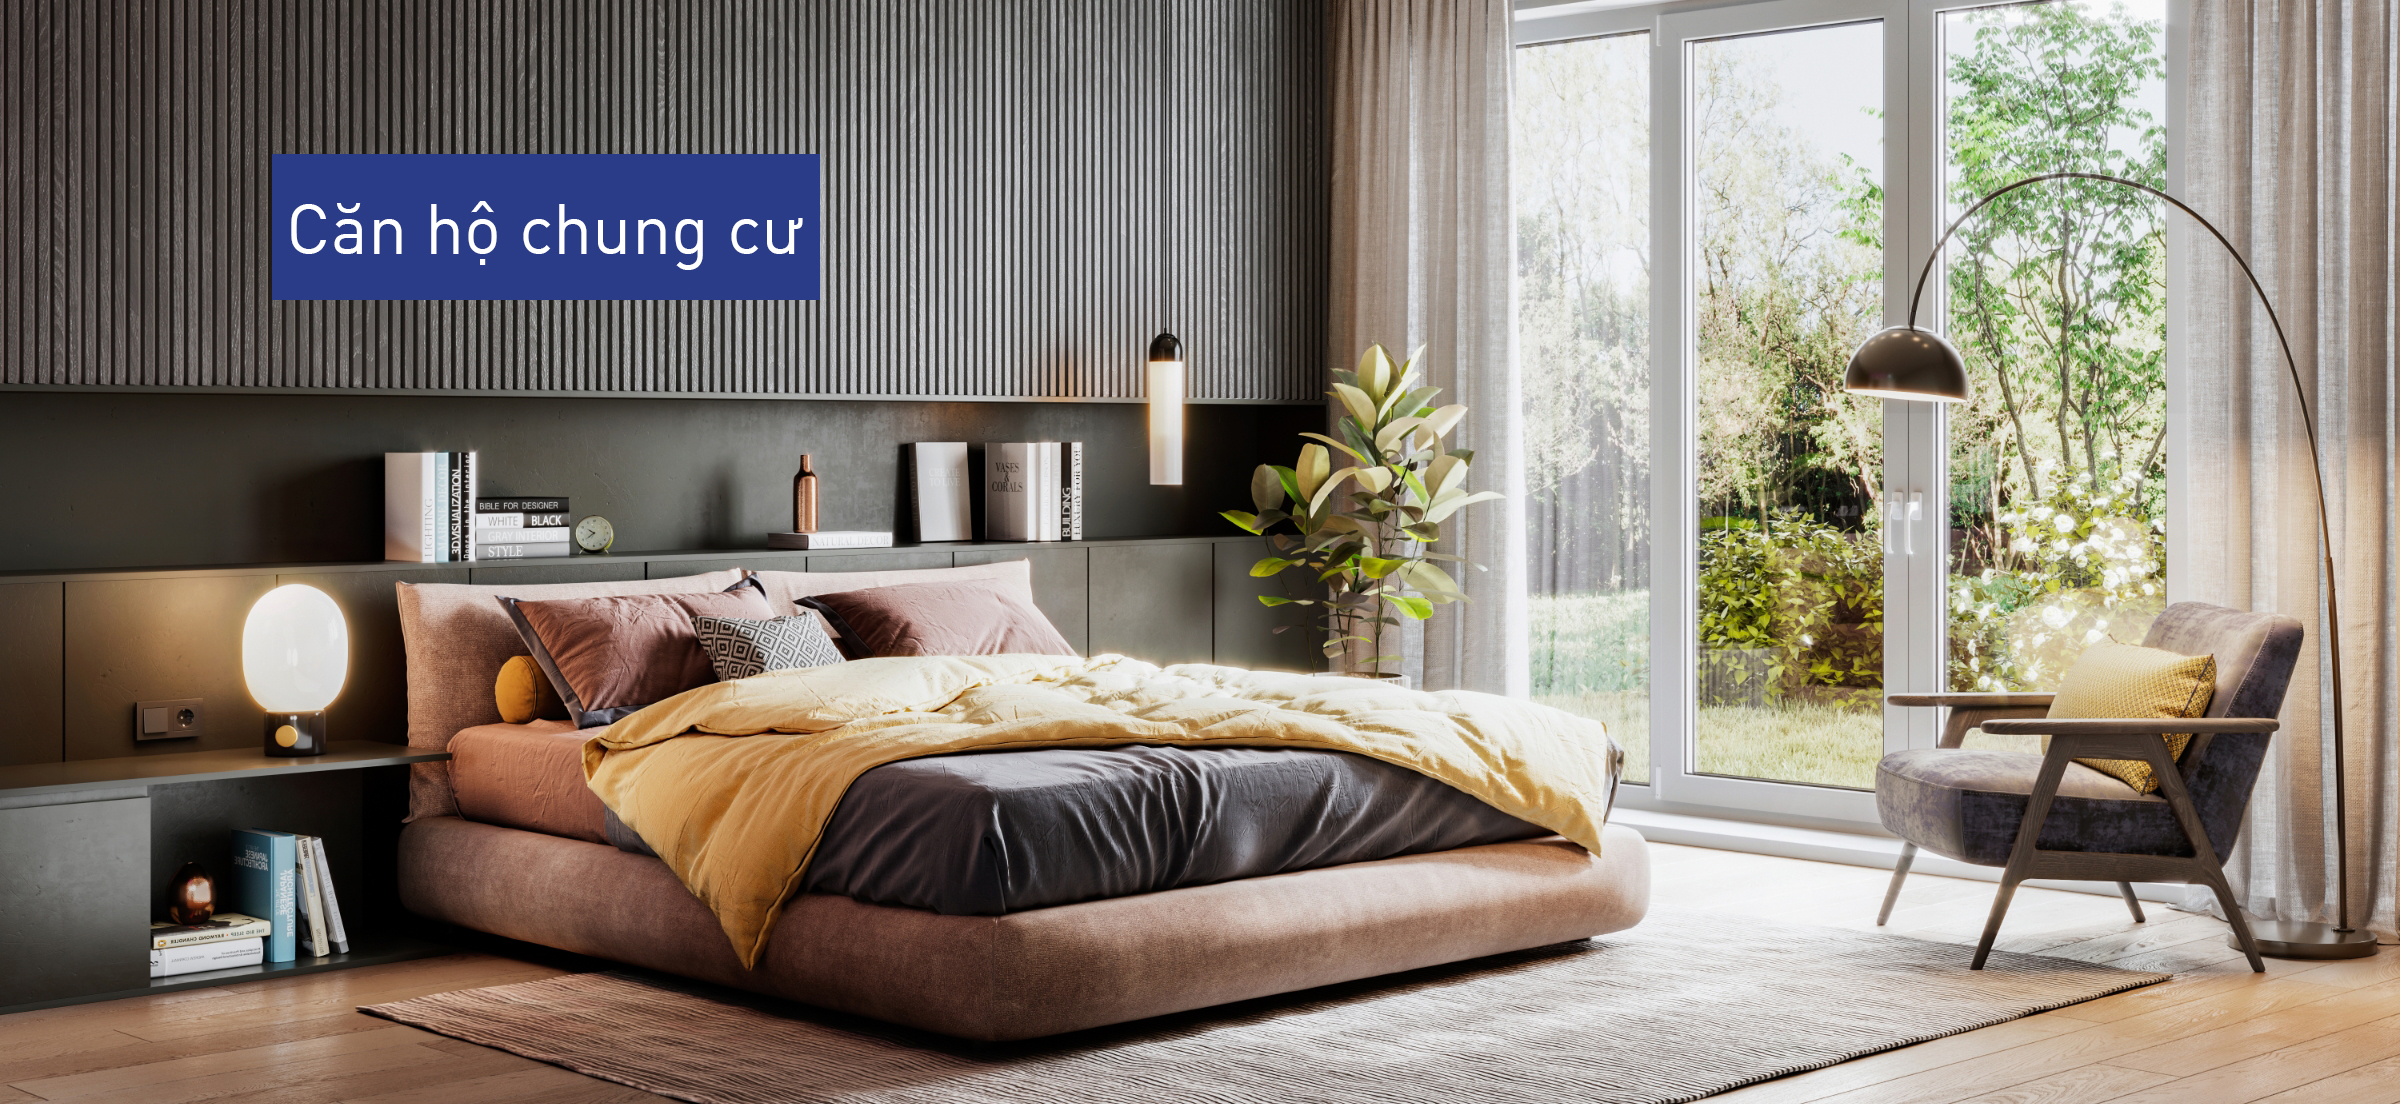 Hình ảnh minh họa chứng minh kiểm soát chất lượng không khí vượt trội giúp một cặp đôi thư giãn trong phòng ngủ